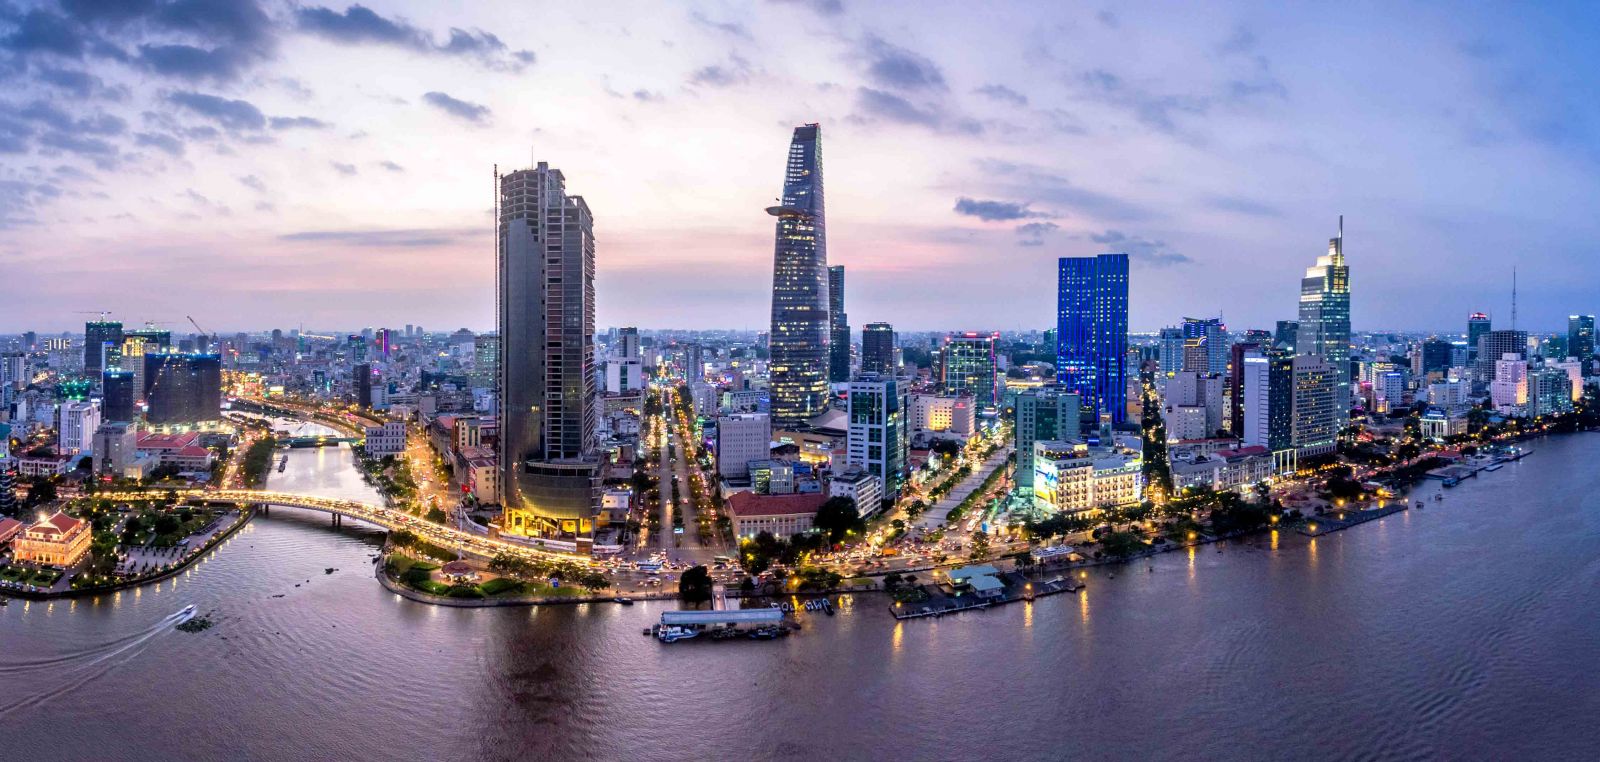 Kiến trúc bền vững công trình cao tầng trong khu vực nội đô các đô thị Việt Nam